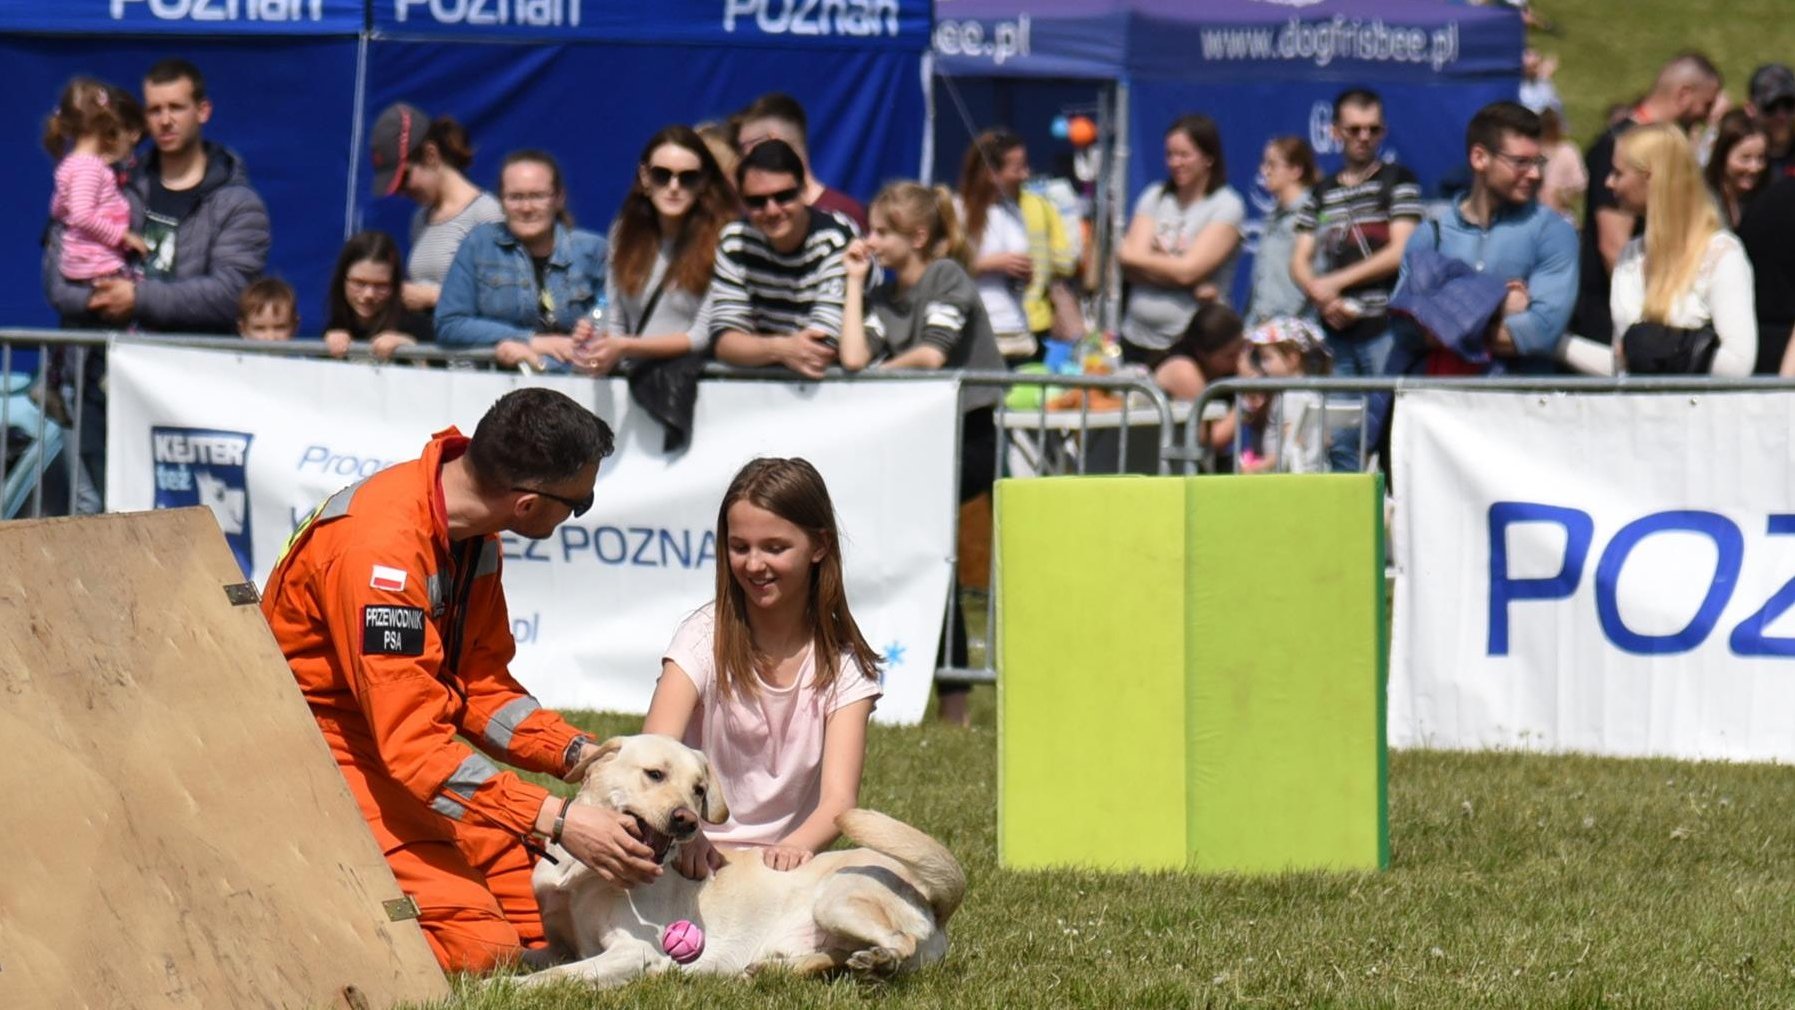 Zdjęcie przedstawia mężczyznę w pomarańczowym stroju z napisem "przewodnik psa", który klęczy na trawie w towarzystwie psa i małej dziewczynki. W tle, za barierką widać innych ludzi.